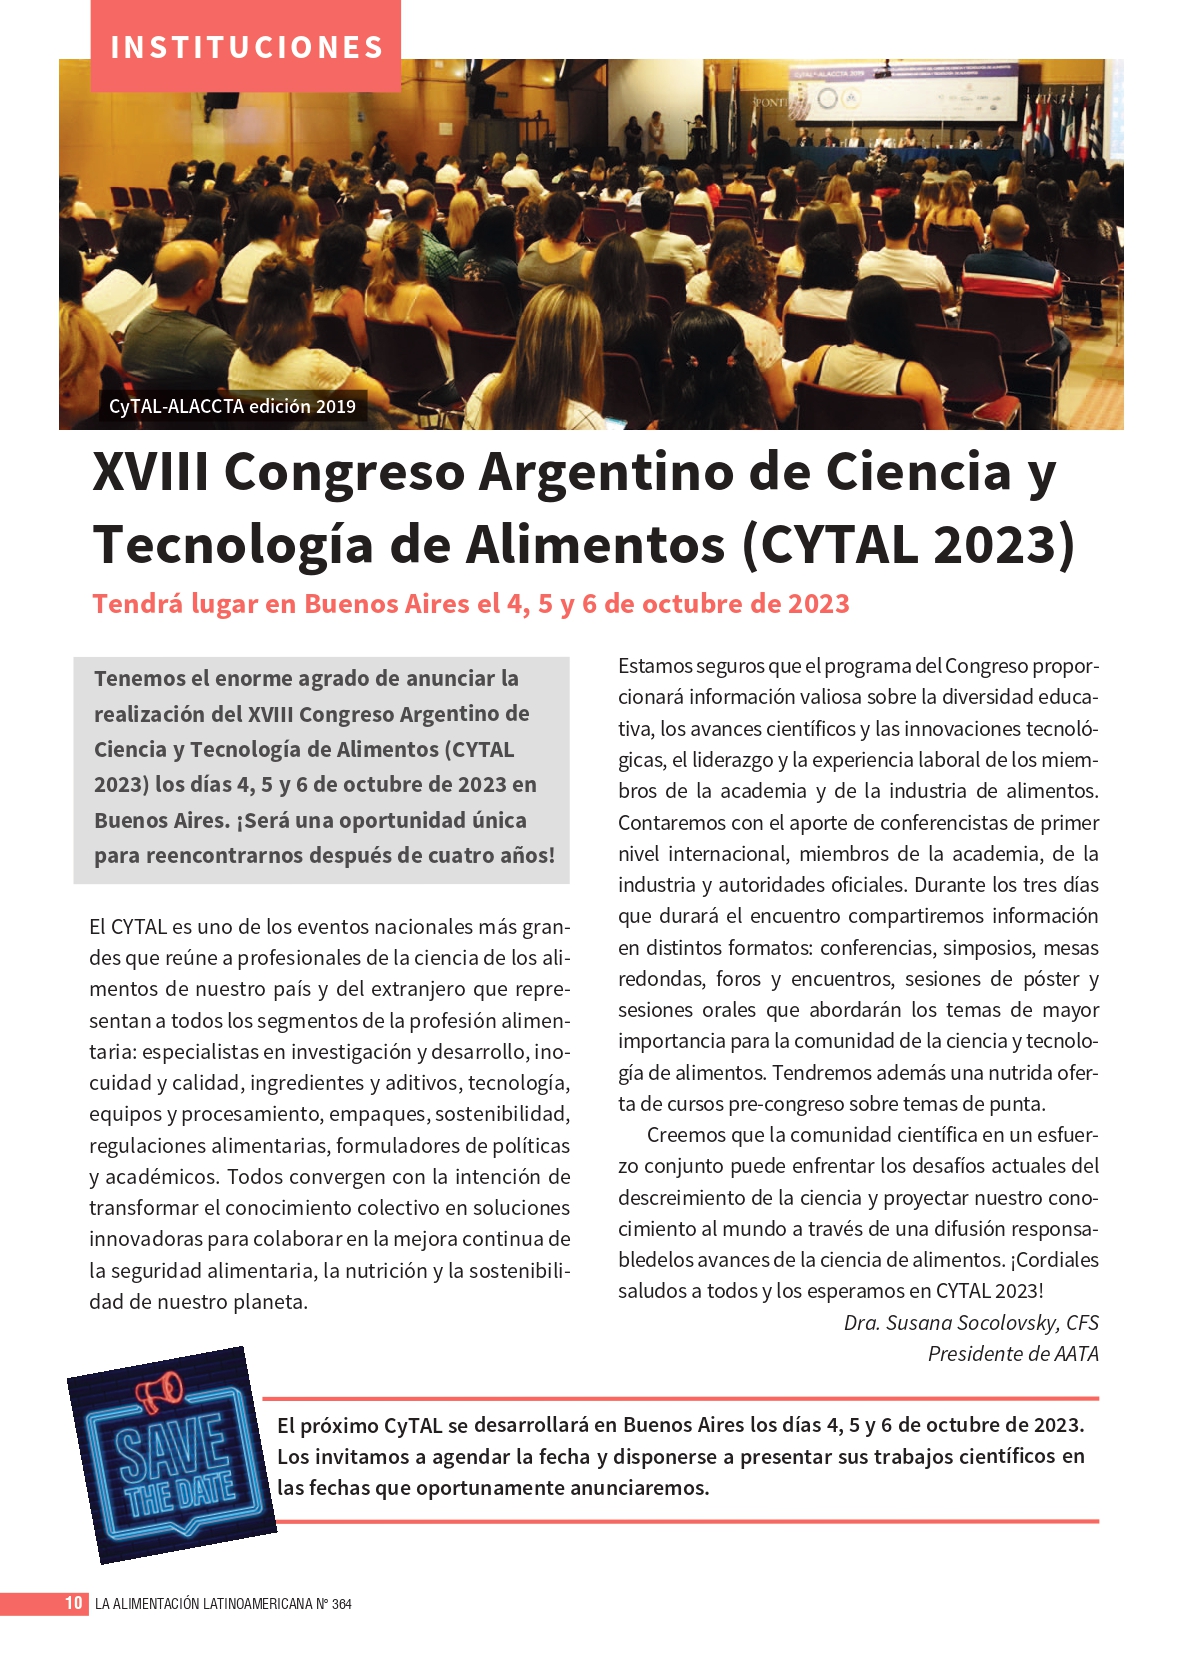 XVIII Congreso Argentino de Ciencia y Tecnología de Alimentos